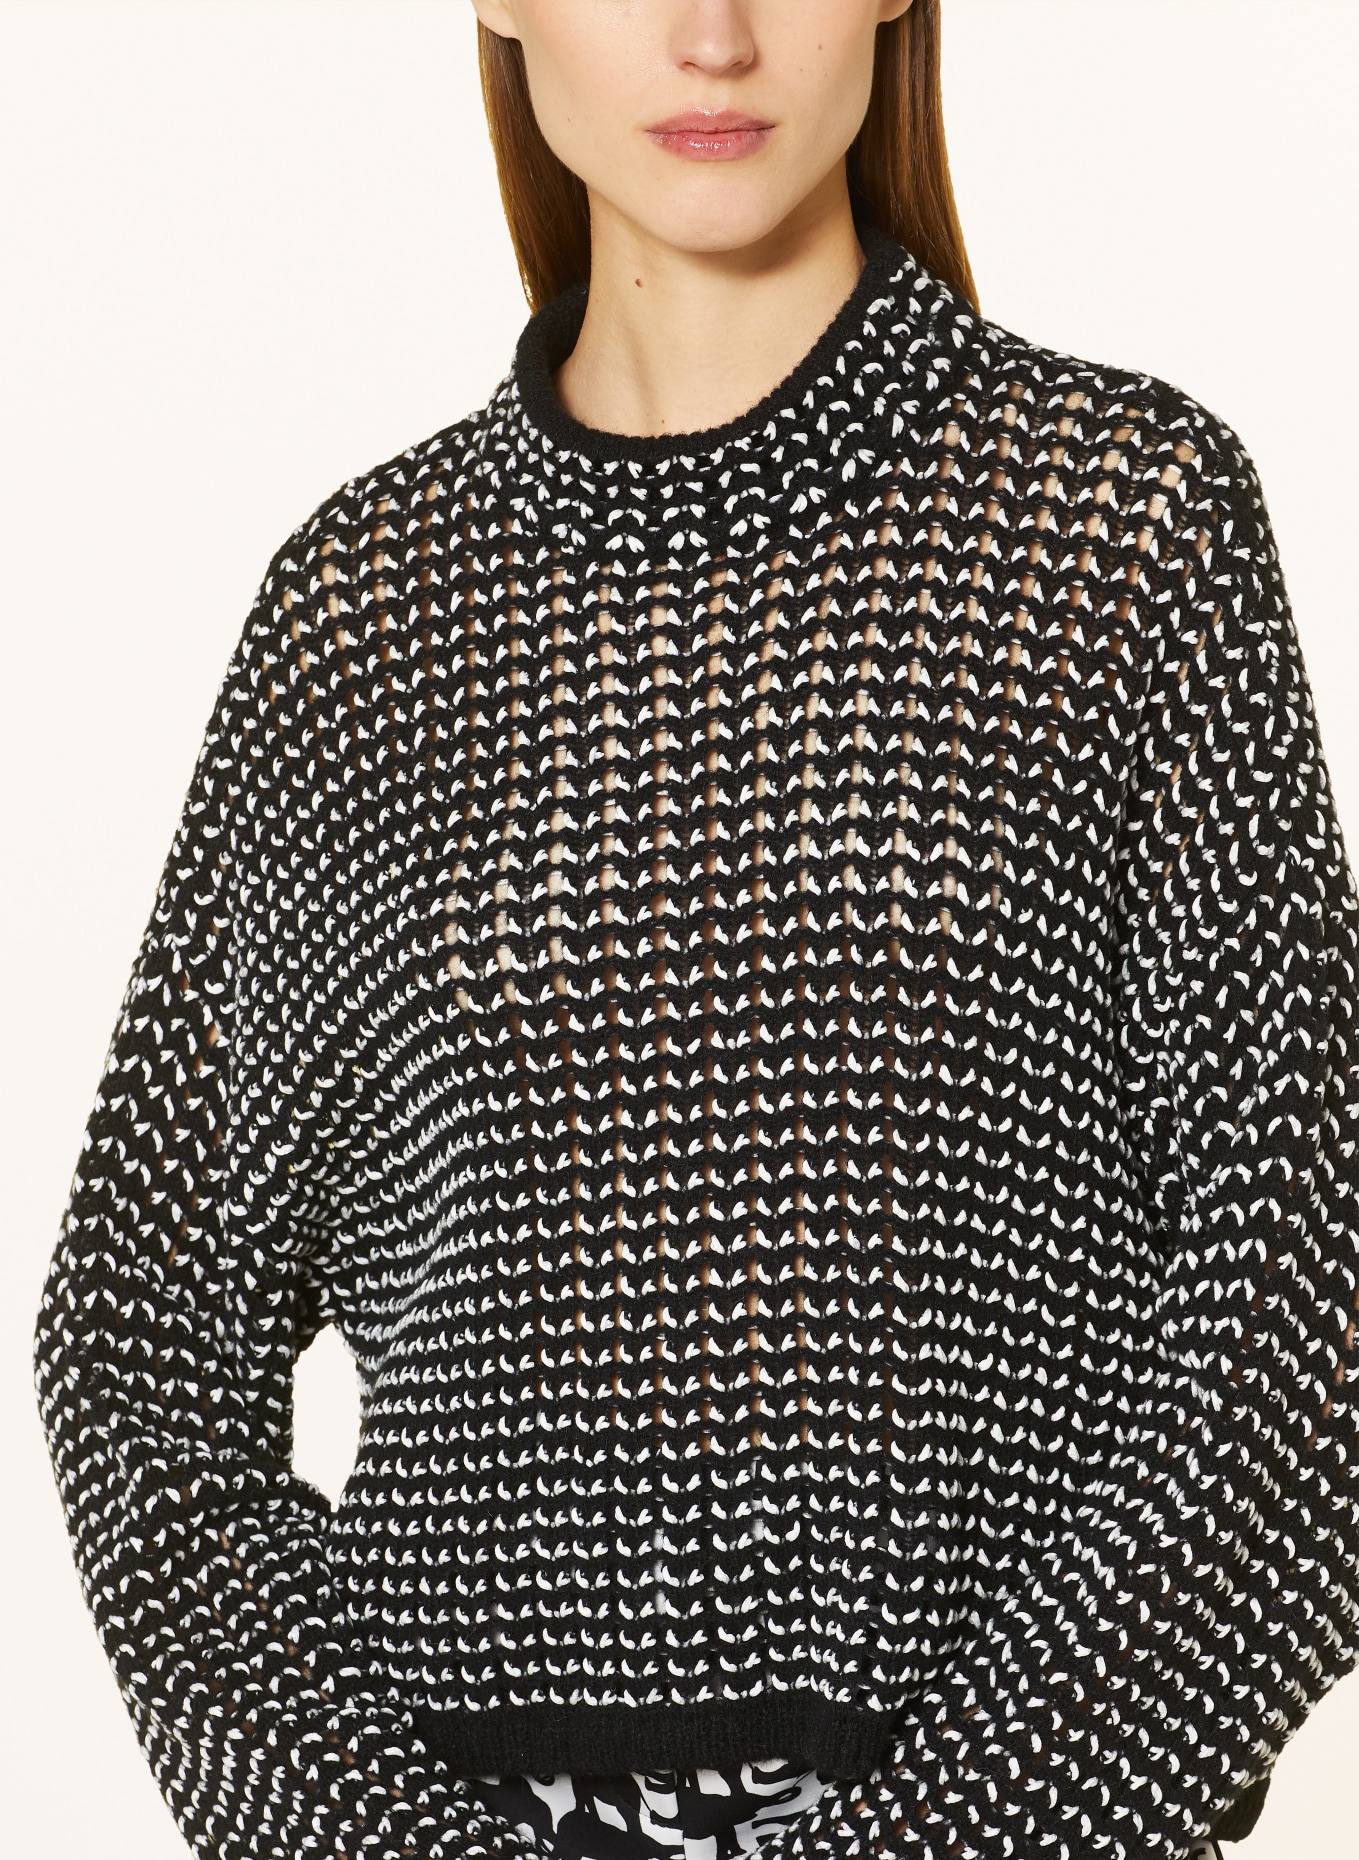 MARC CAIN Pullover, Farbe: 910 black and white (Bild 4)